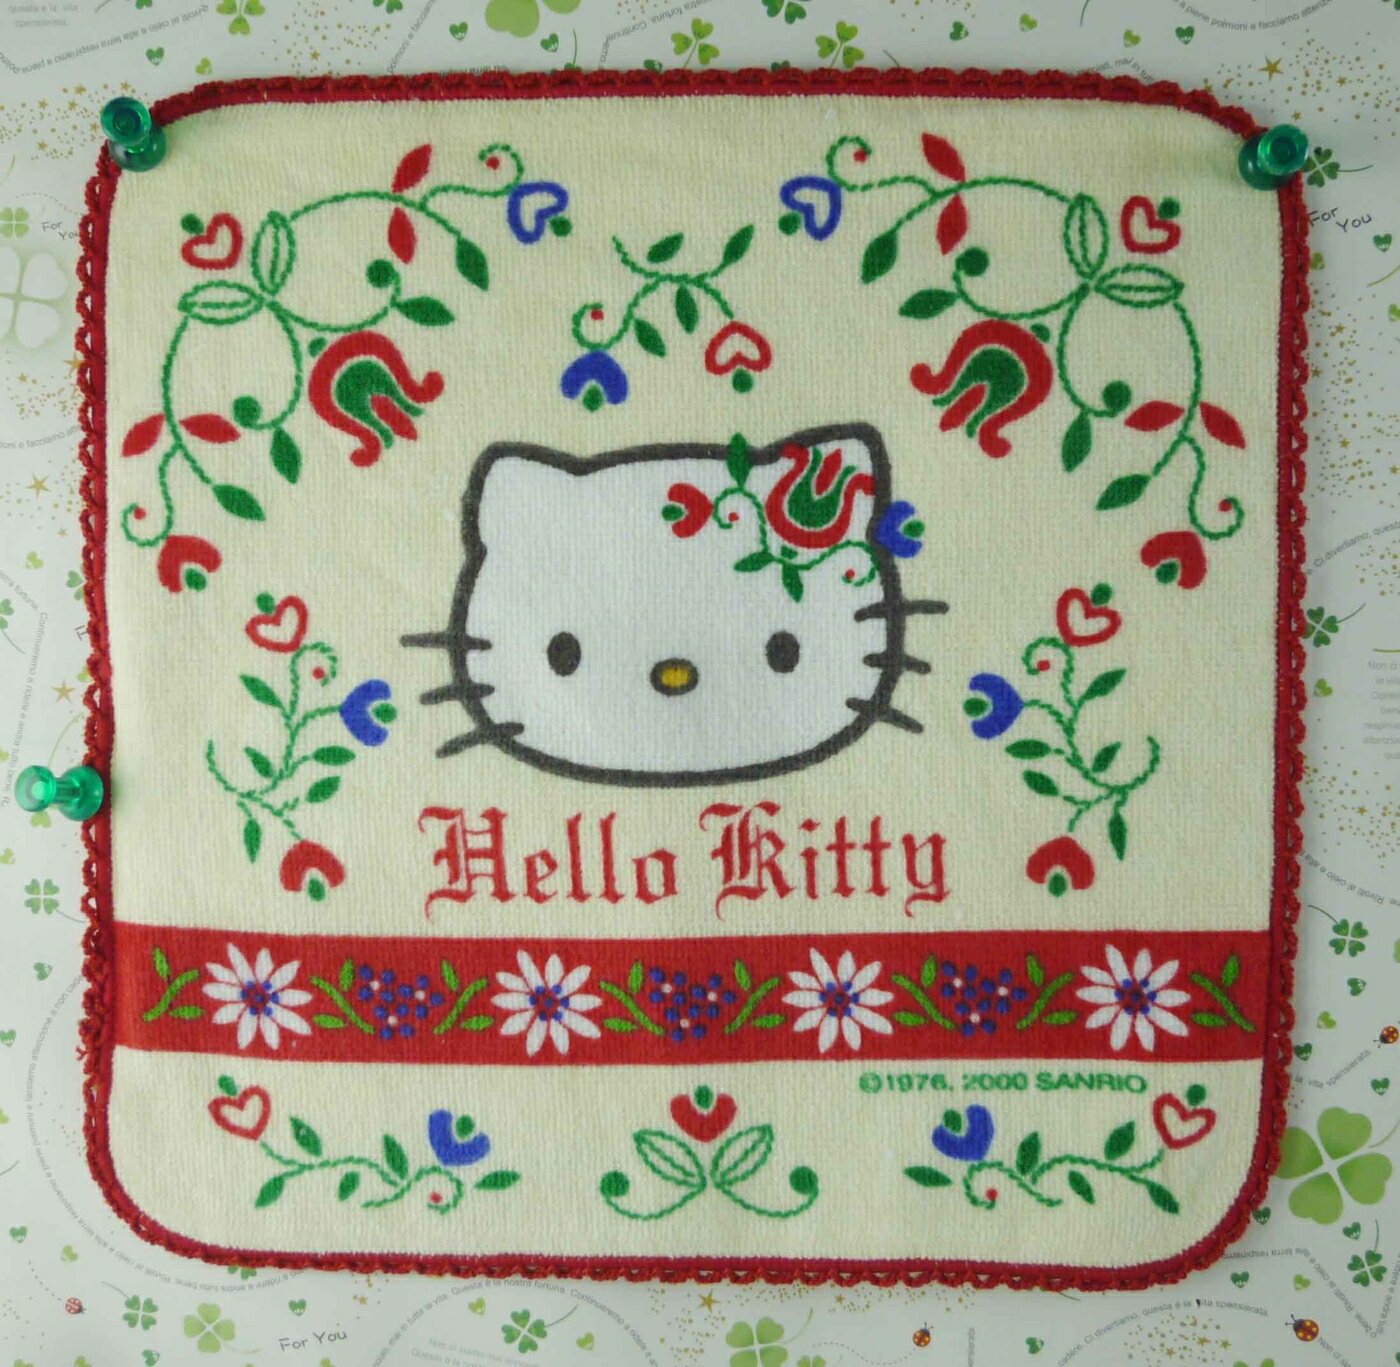 【震撼精品百貨】Hello Kitty 凱蒂貓 方巾-限量款-瑞士 震撼日式精品百貨